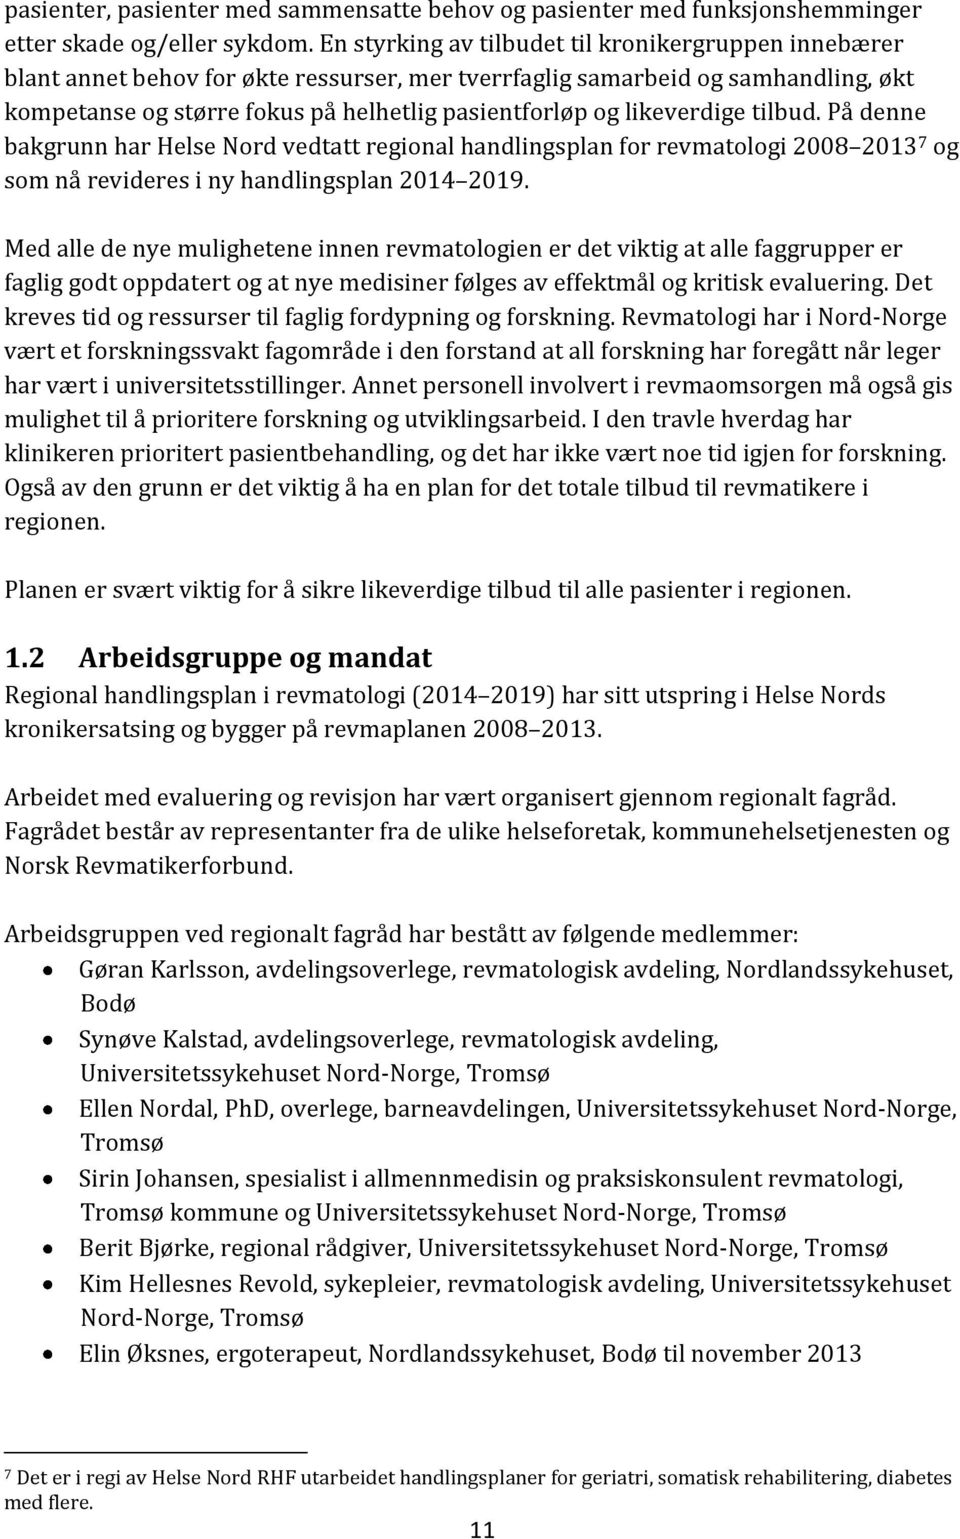 likeverdige tilbud. På denne bakgrunn har Helse Nord vedtatt regional handlingsplan for revmatologi 2008 2013 7 og som nå revideres i ny handlingsplan 2014 2019.